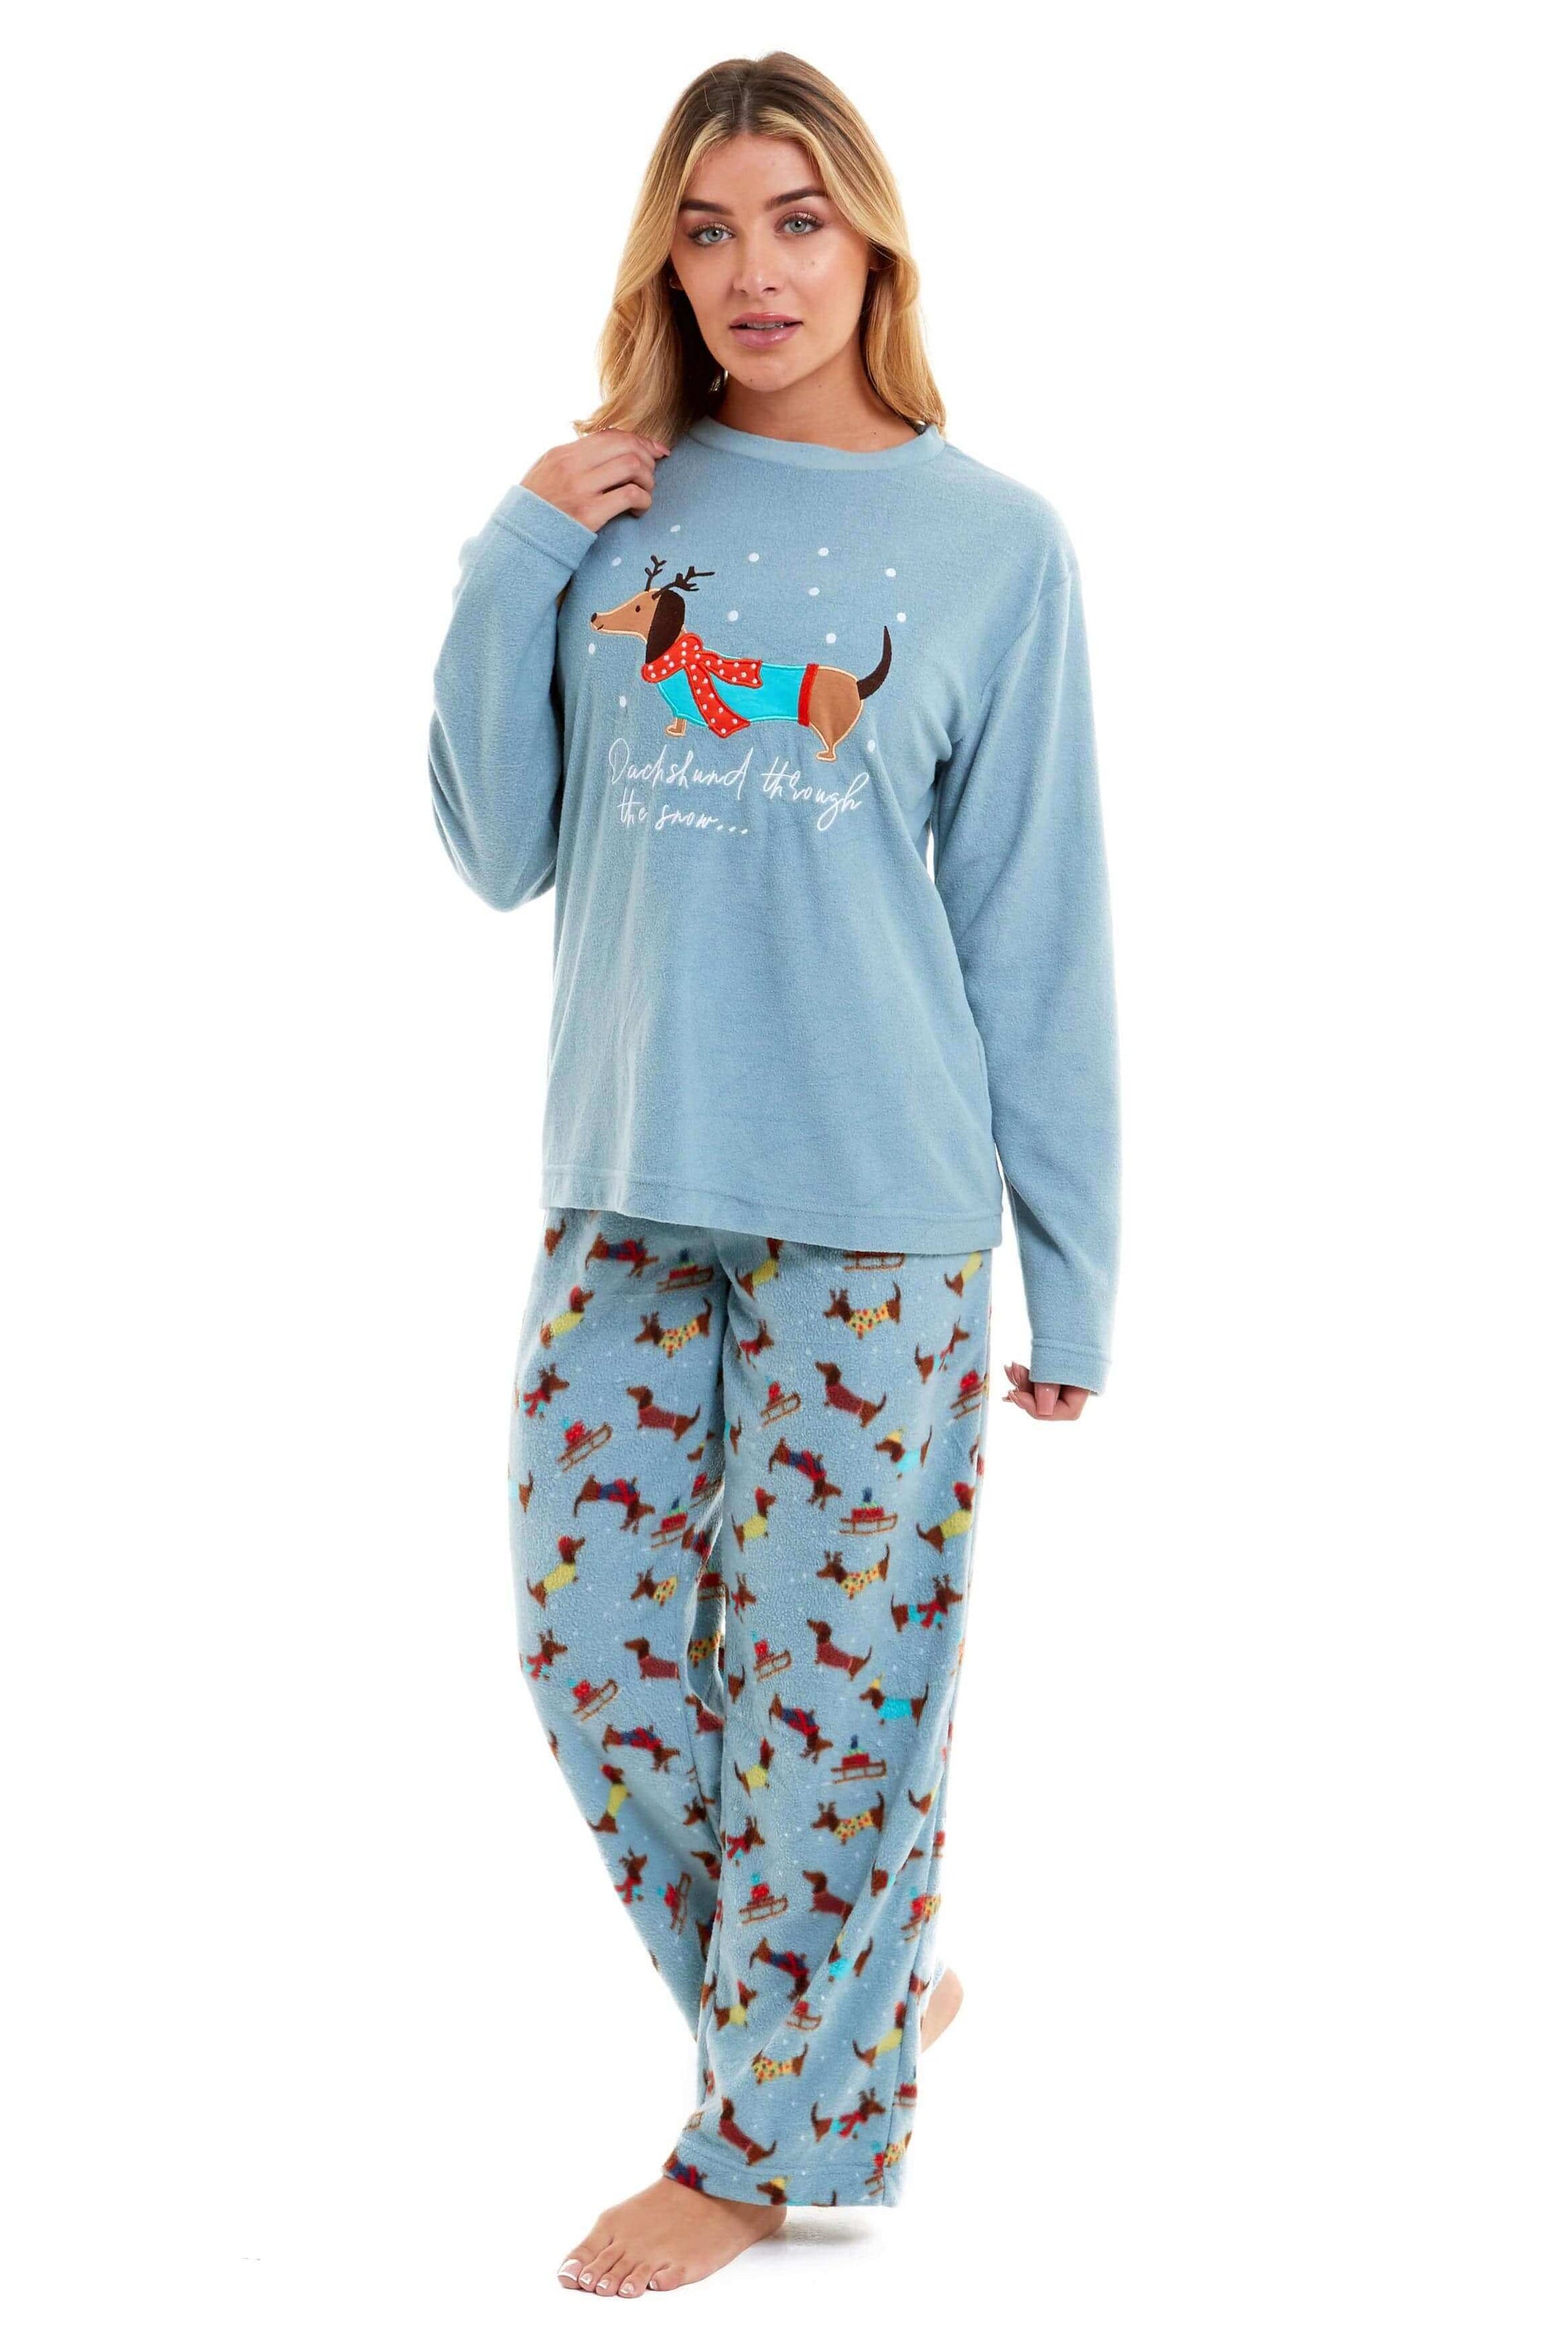 Dachshund Polar Fleece Pyjama Set, Cosy Everyday Loungewear, Christmas Gift Idea. Buy now for £17.00. A Pyjamas by Daisy Dreamer. 12-14, 16-18, 18-20, 8-10, animal, christmas, dachshund, daisy dreamer, duck egg, festive, fleece, gift, ladies, long sleeve,